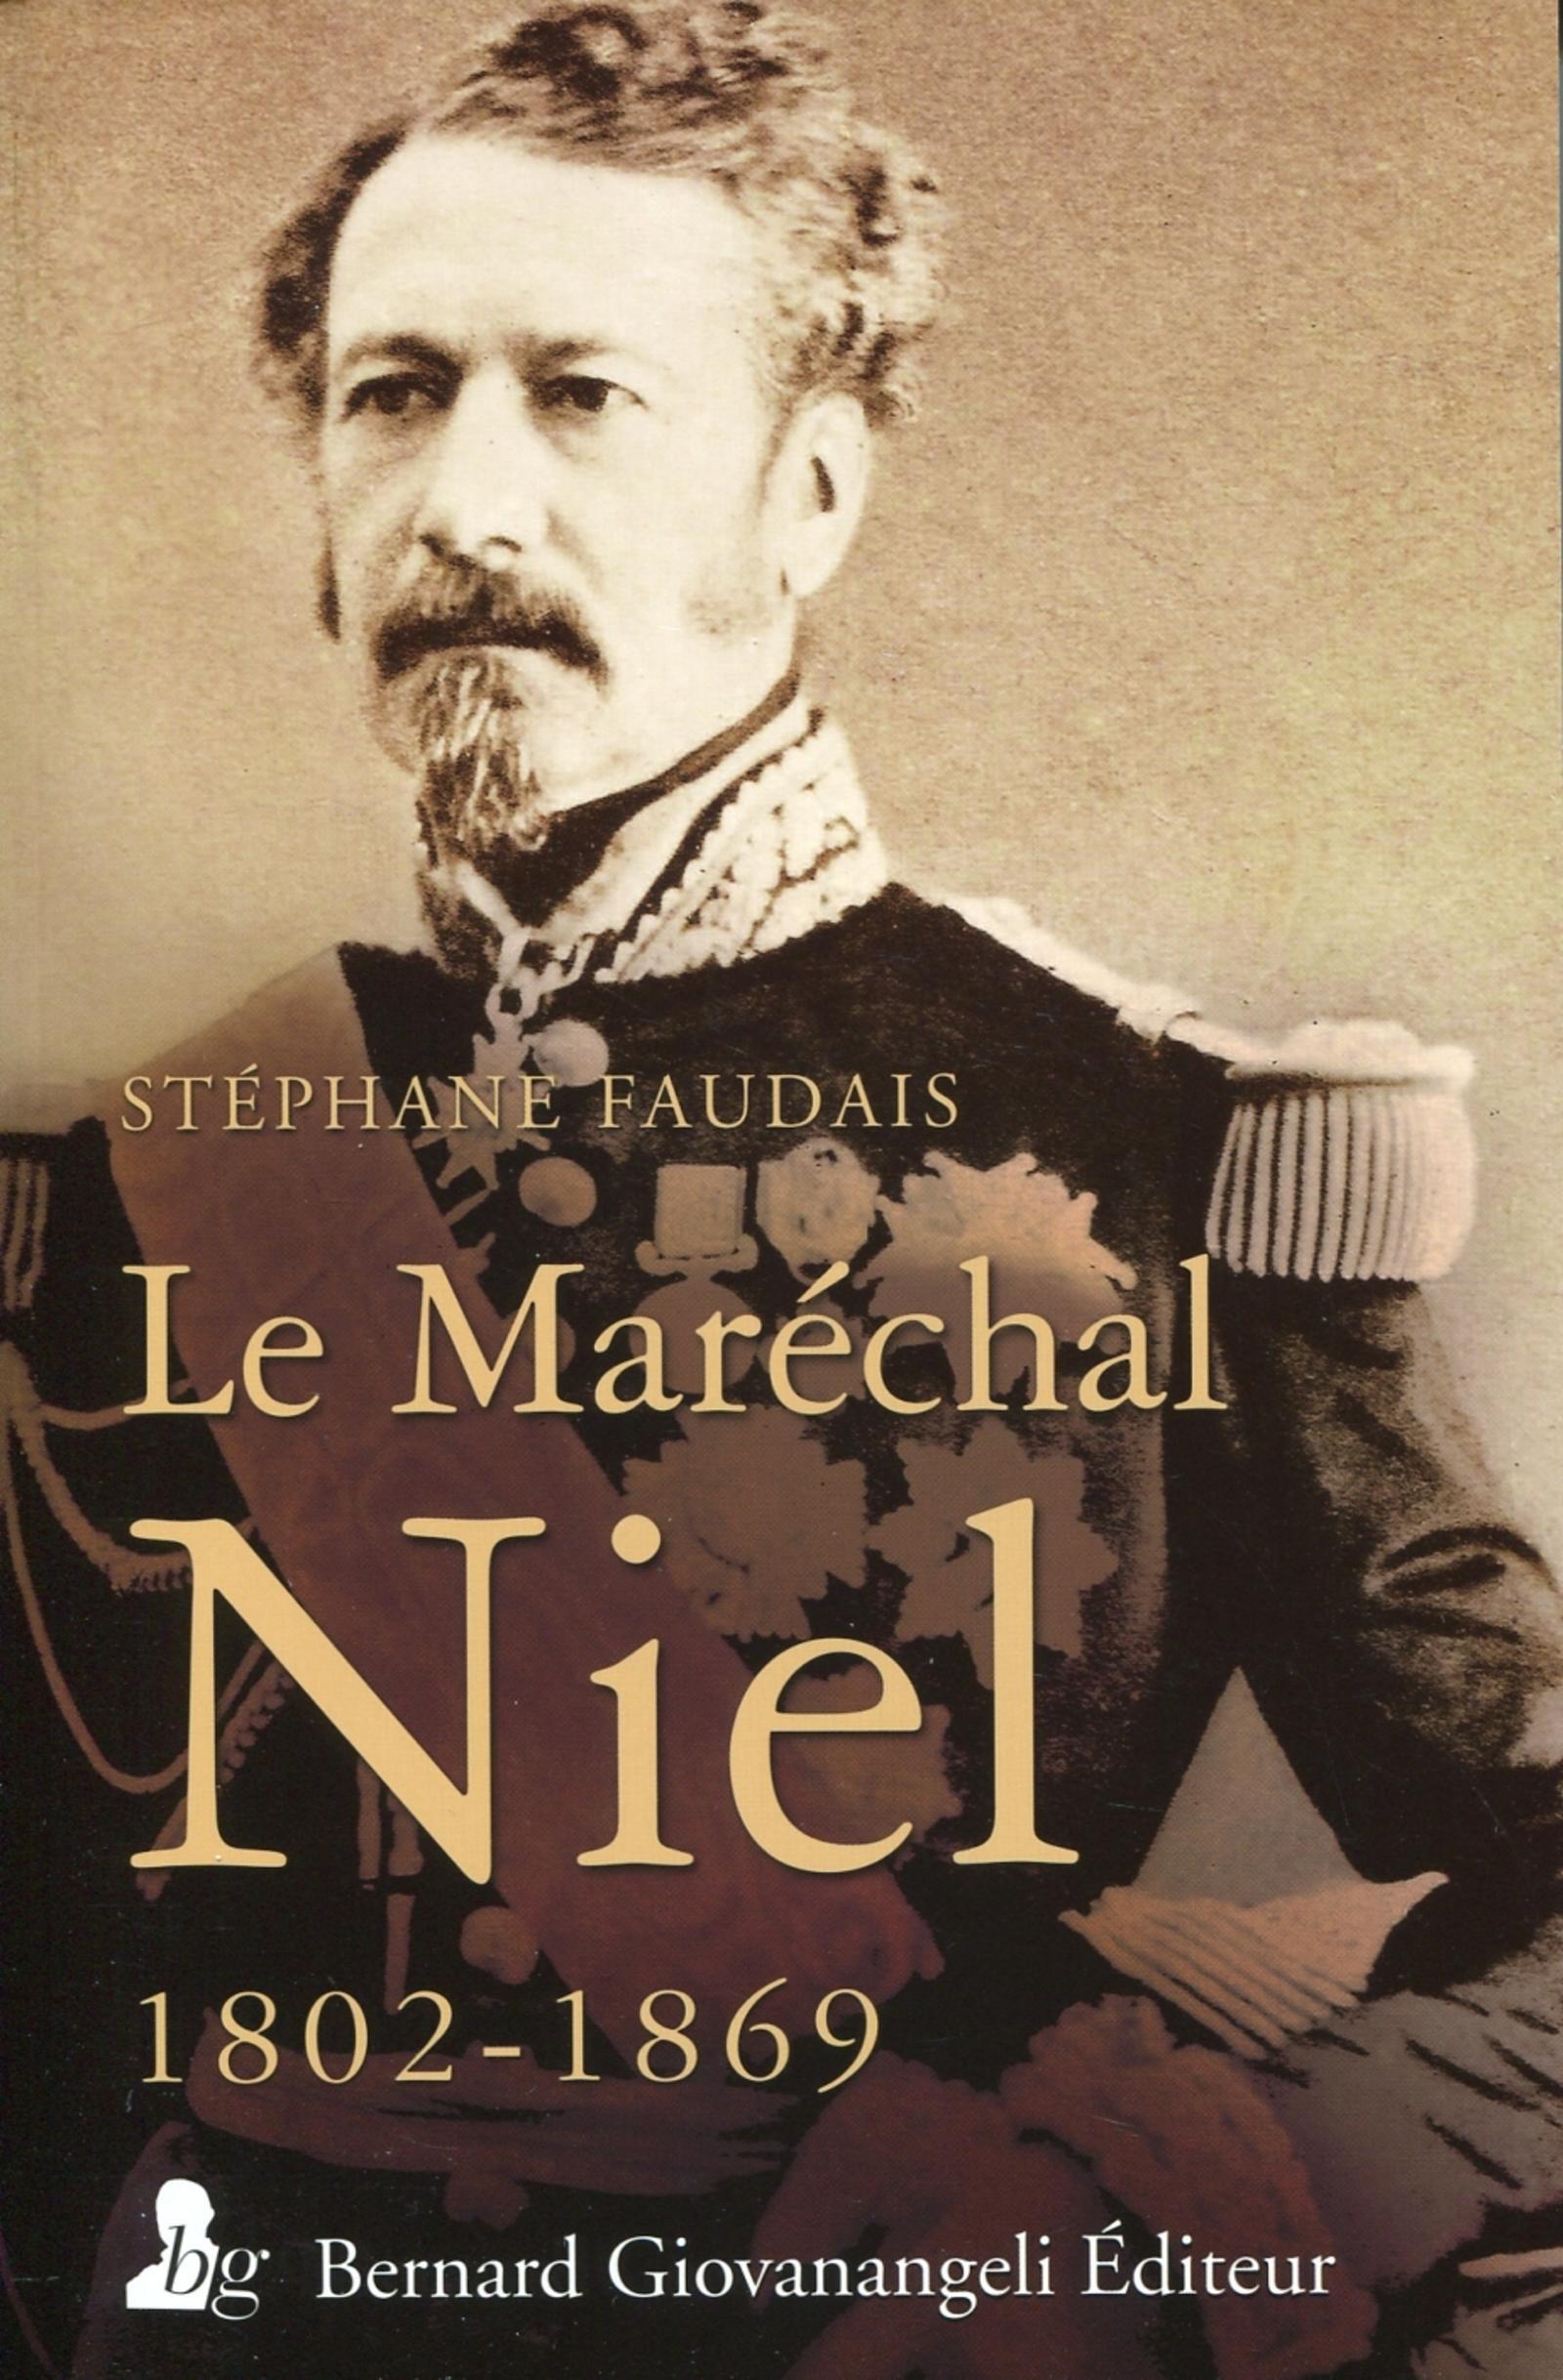 Le Marechal Niel 1802-1869